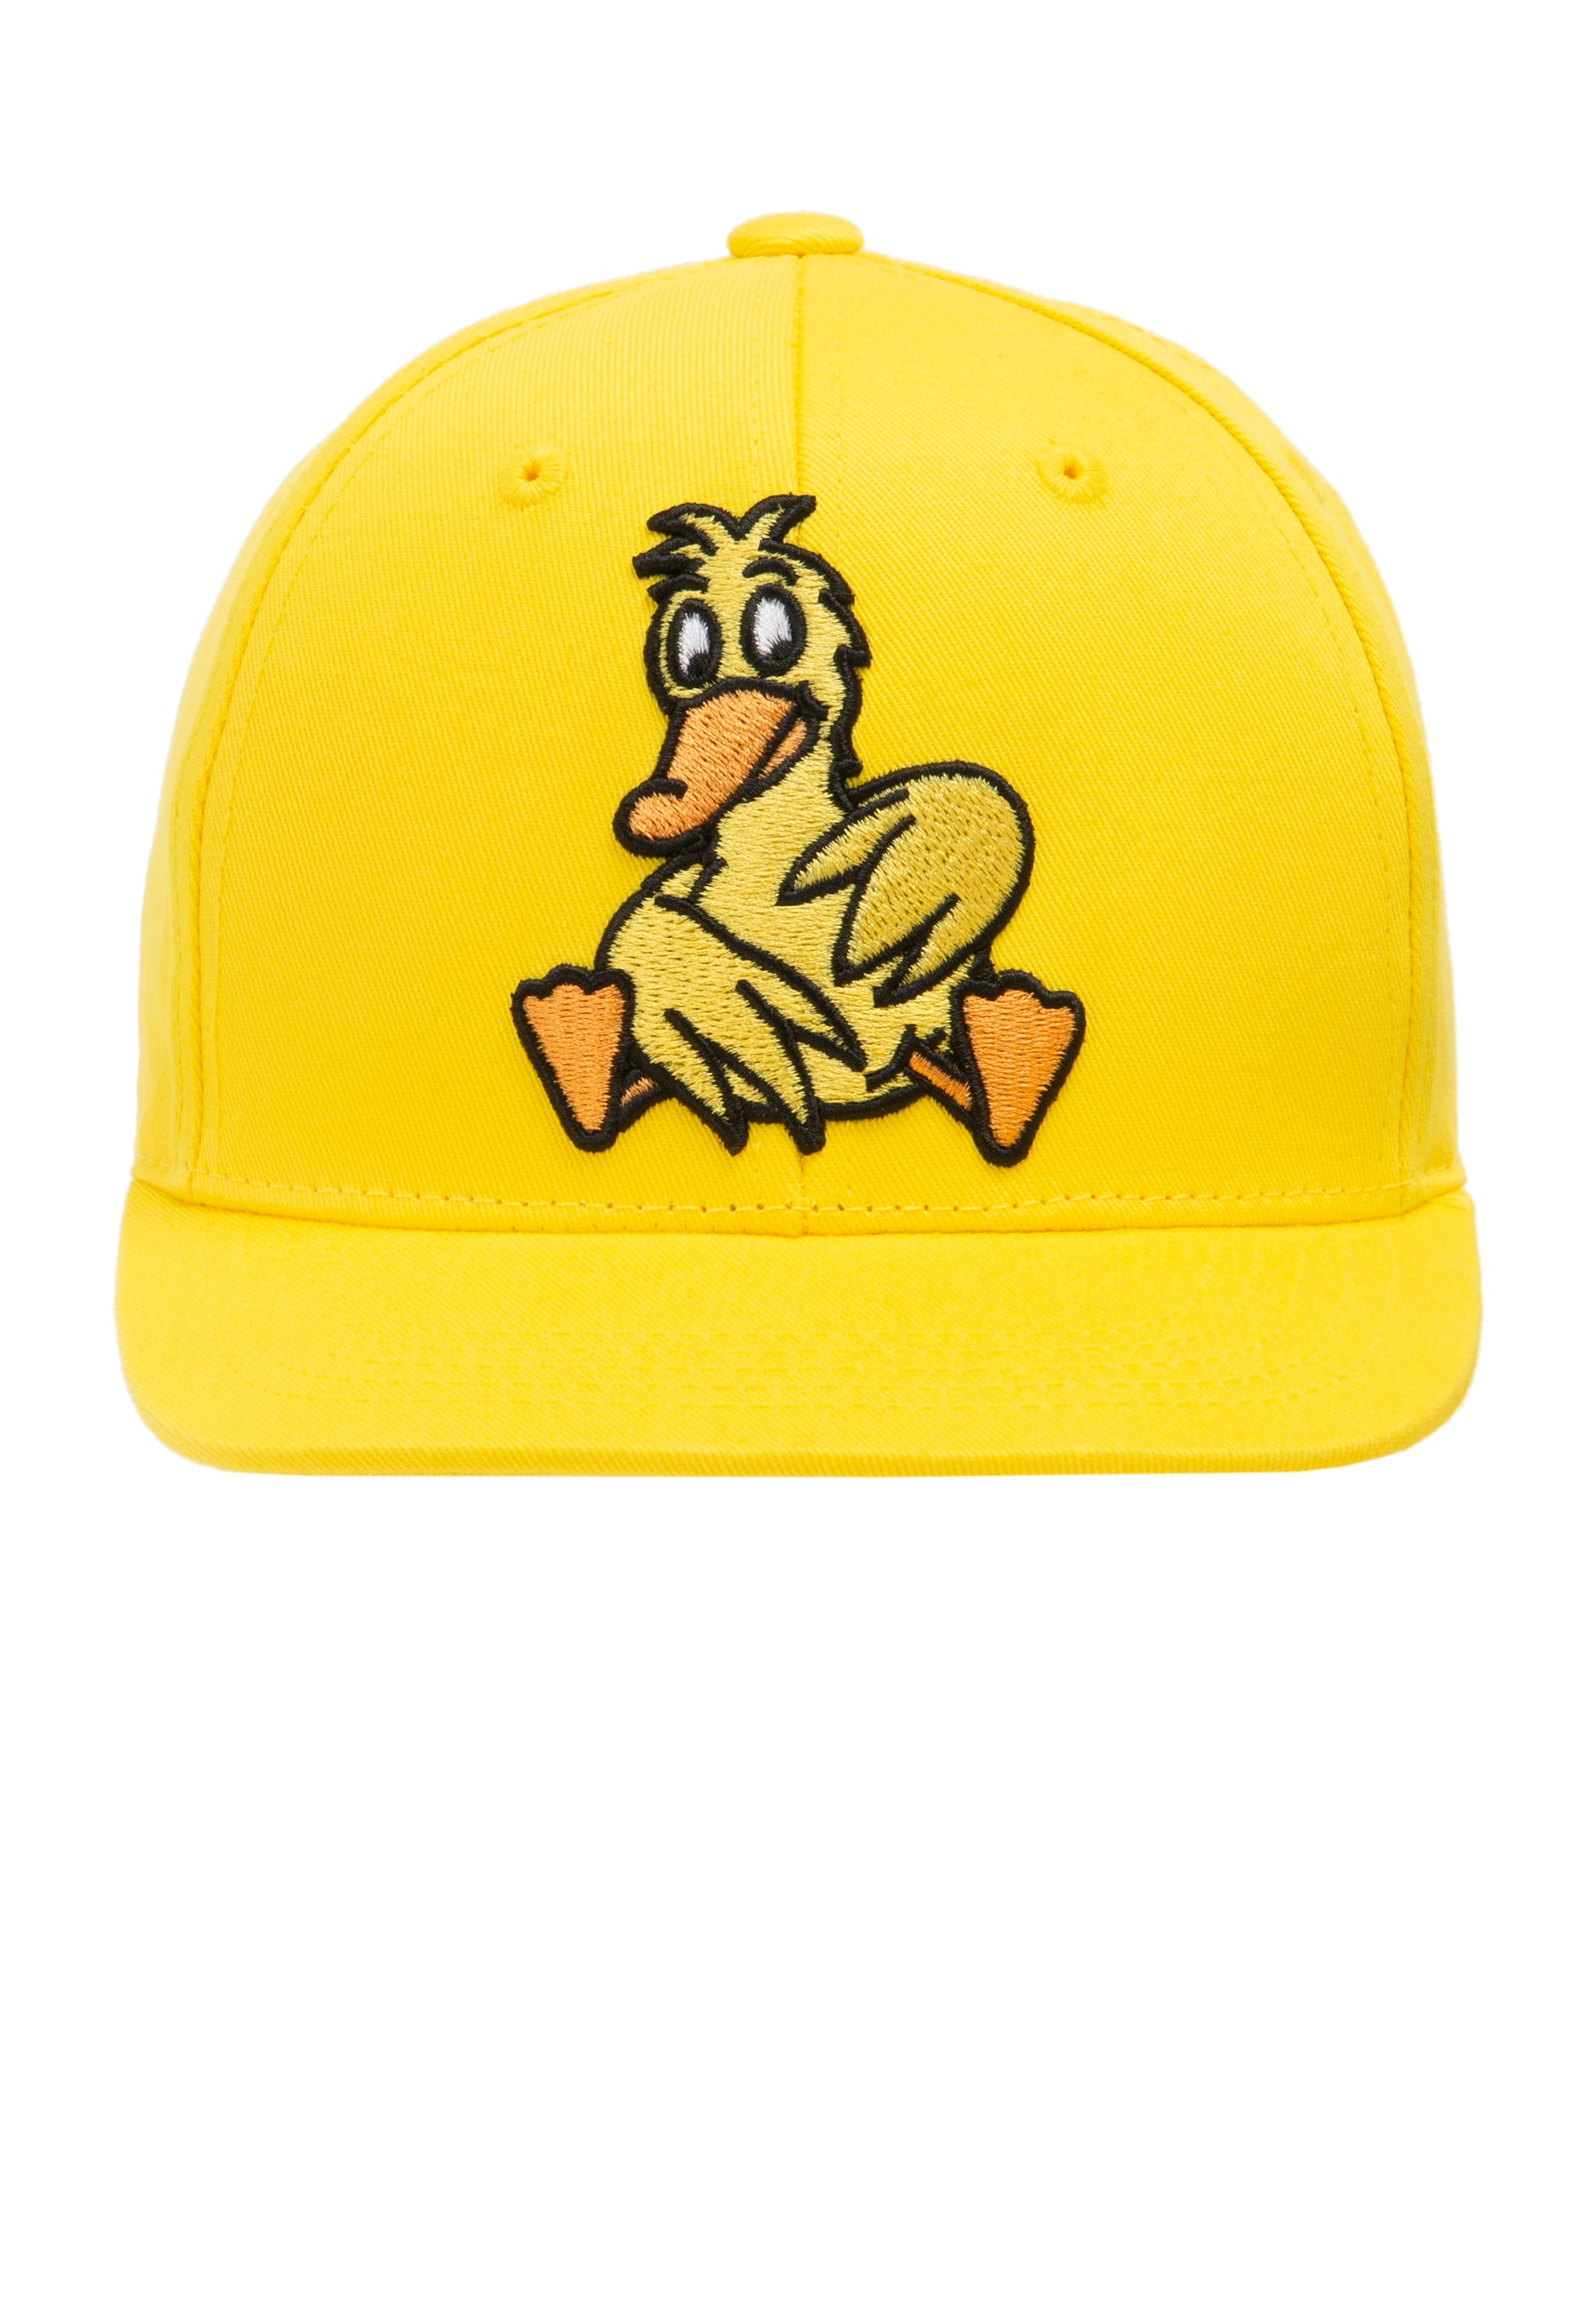 Baseball Cap »Maus - Ente sitzt«, mit detailreicher Stickerei